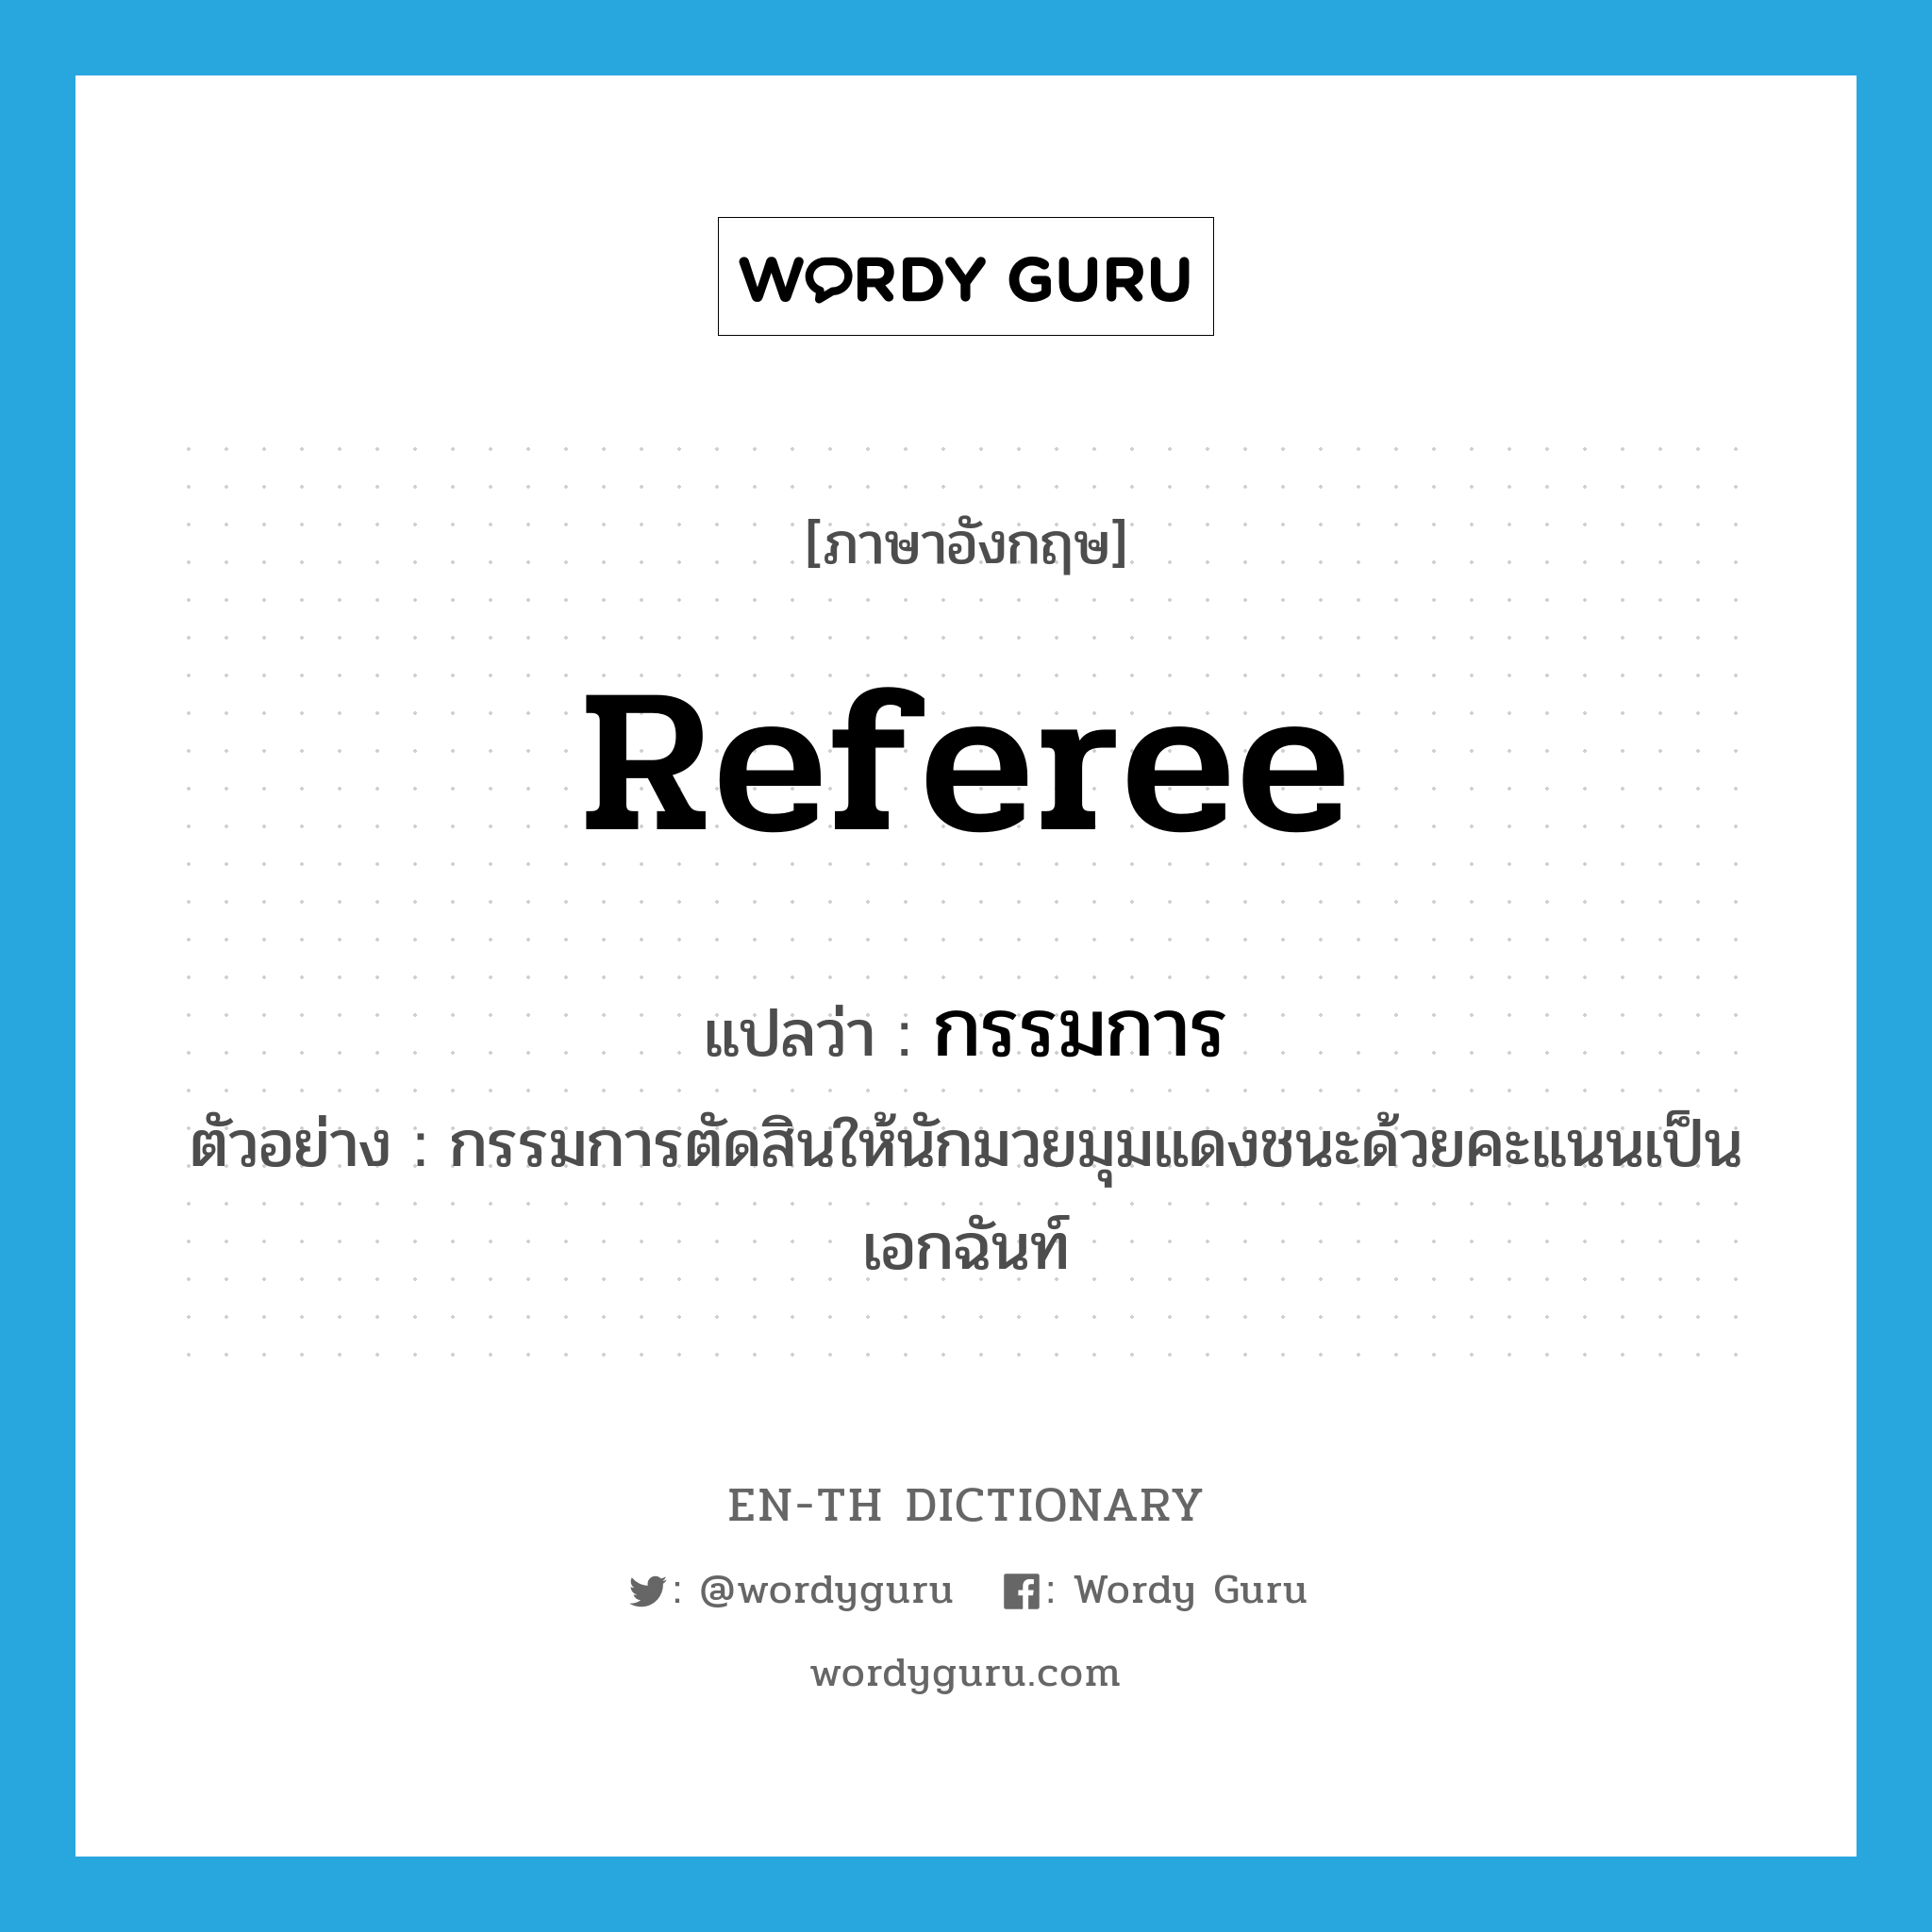 referee แปลว่า?, คำศัพท์ภาษาอังกฤษ referee แปลว่า กรรมการ ประเภท N ตัวอย่าง กรรมการตัดสินให้นักมวยมุมแดงชนะด้วยคะแนนเป็นเอกฉันท์ หมวด N